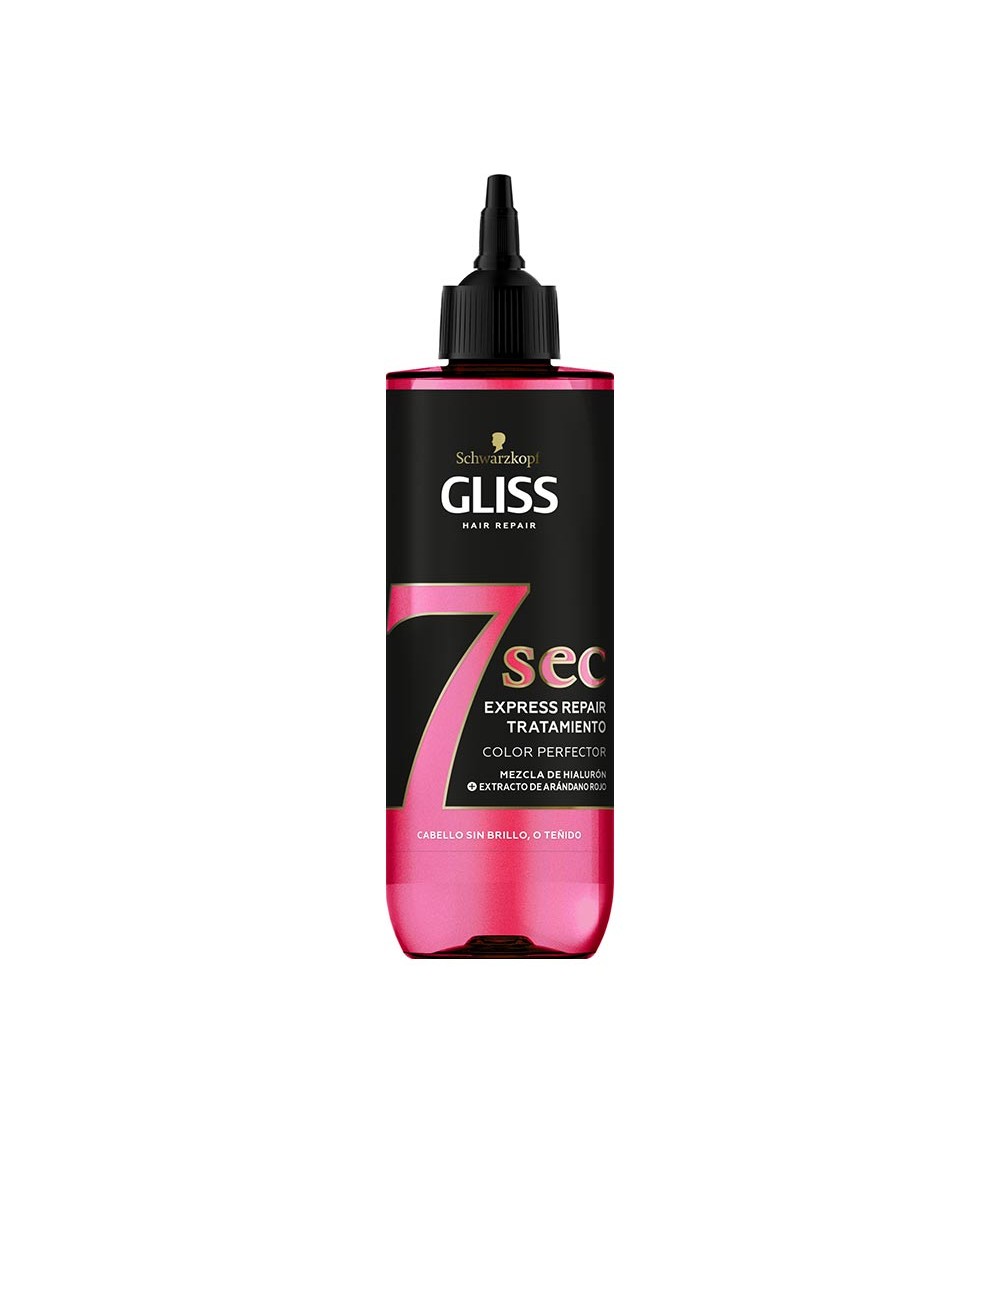 GLISS 7 SEC traitement réparateur express perfecteur de couleur 200 ml